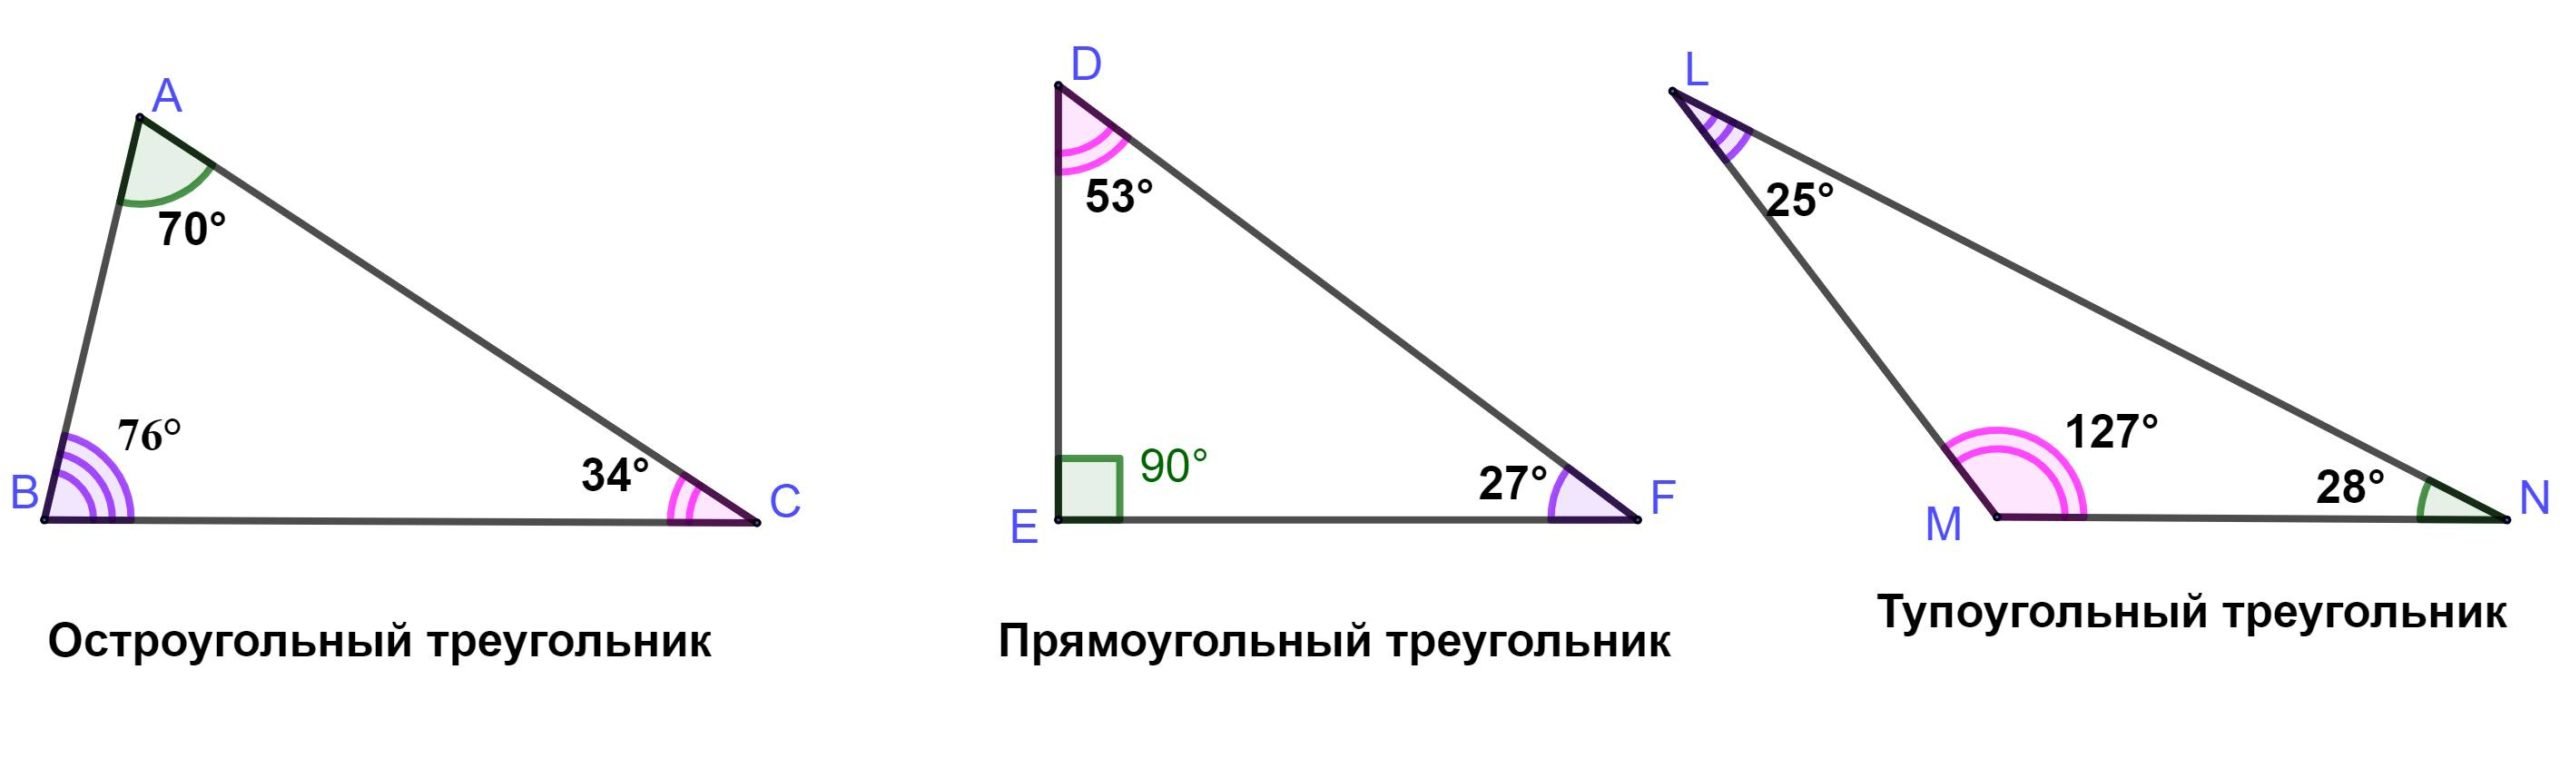 65 какой угол. Тупоугольный треугольник градусы. Тупоугольный треугольник градусы углов. Углы тупоугольного треугольника. Туро угольный треугольник.